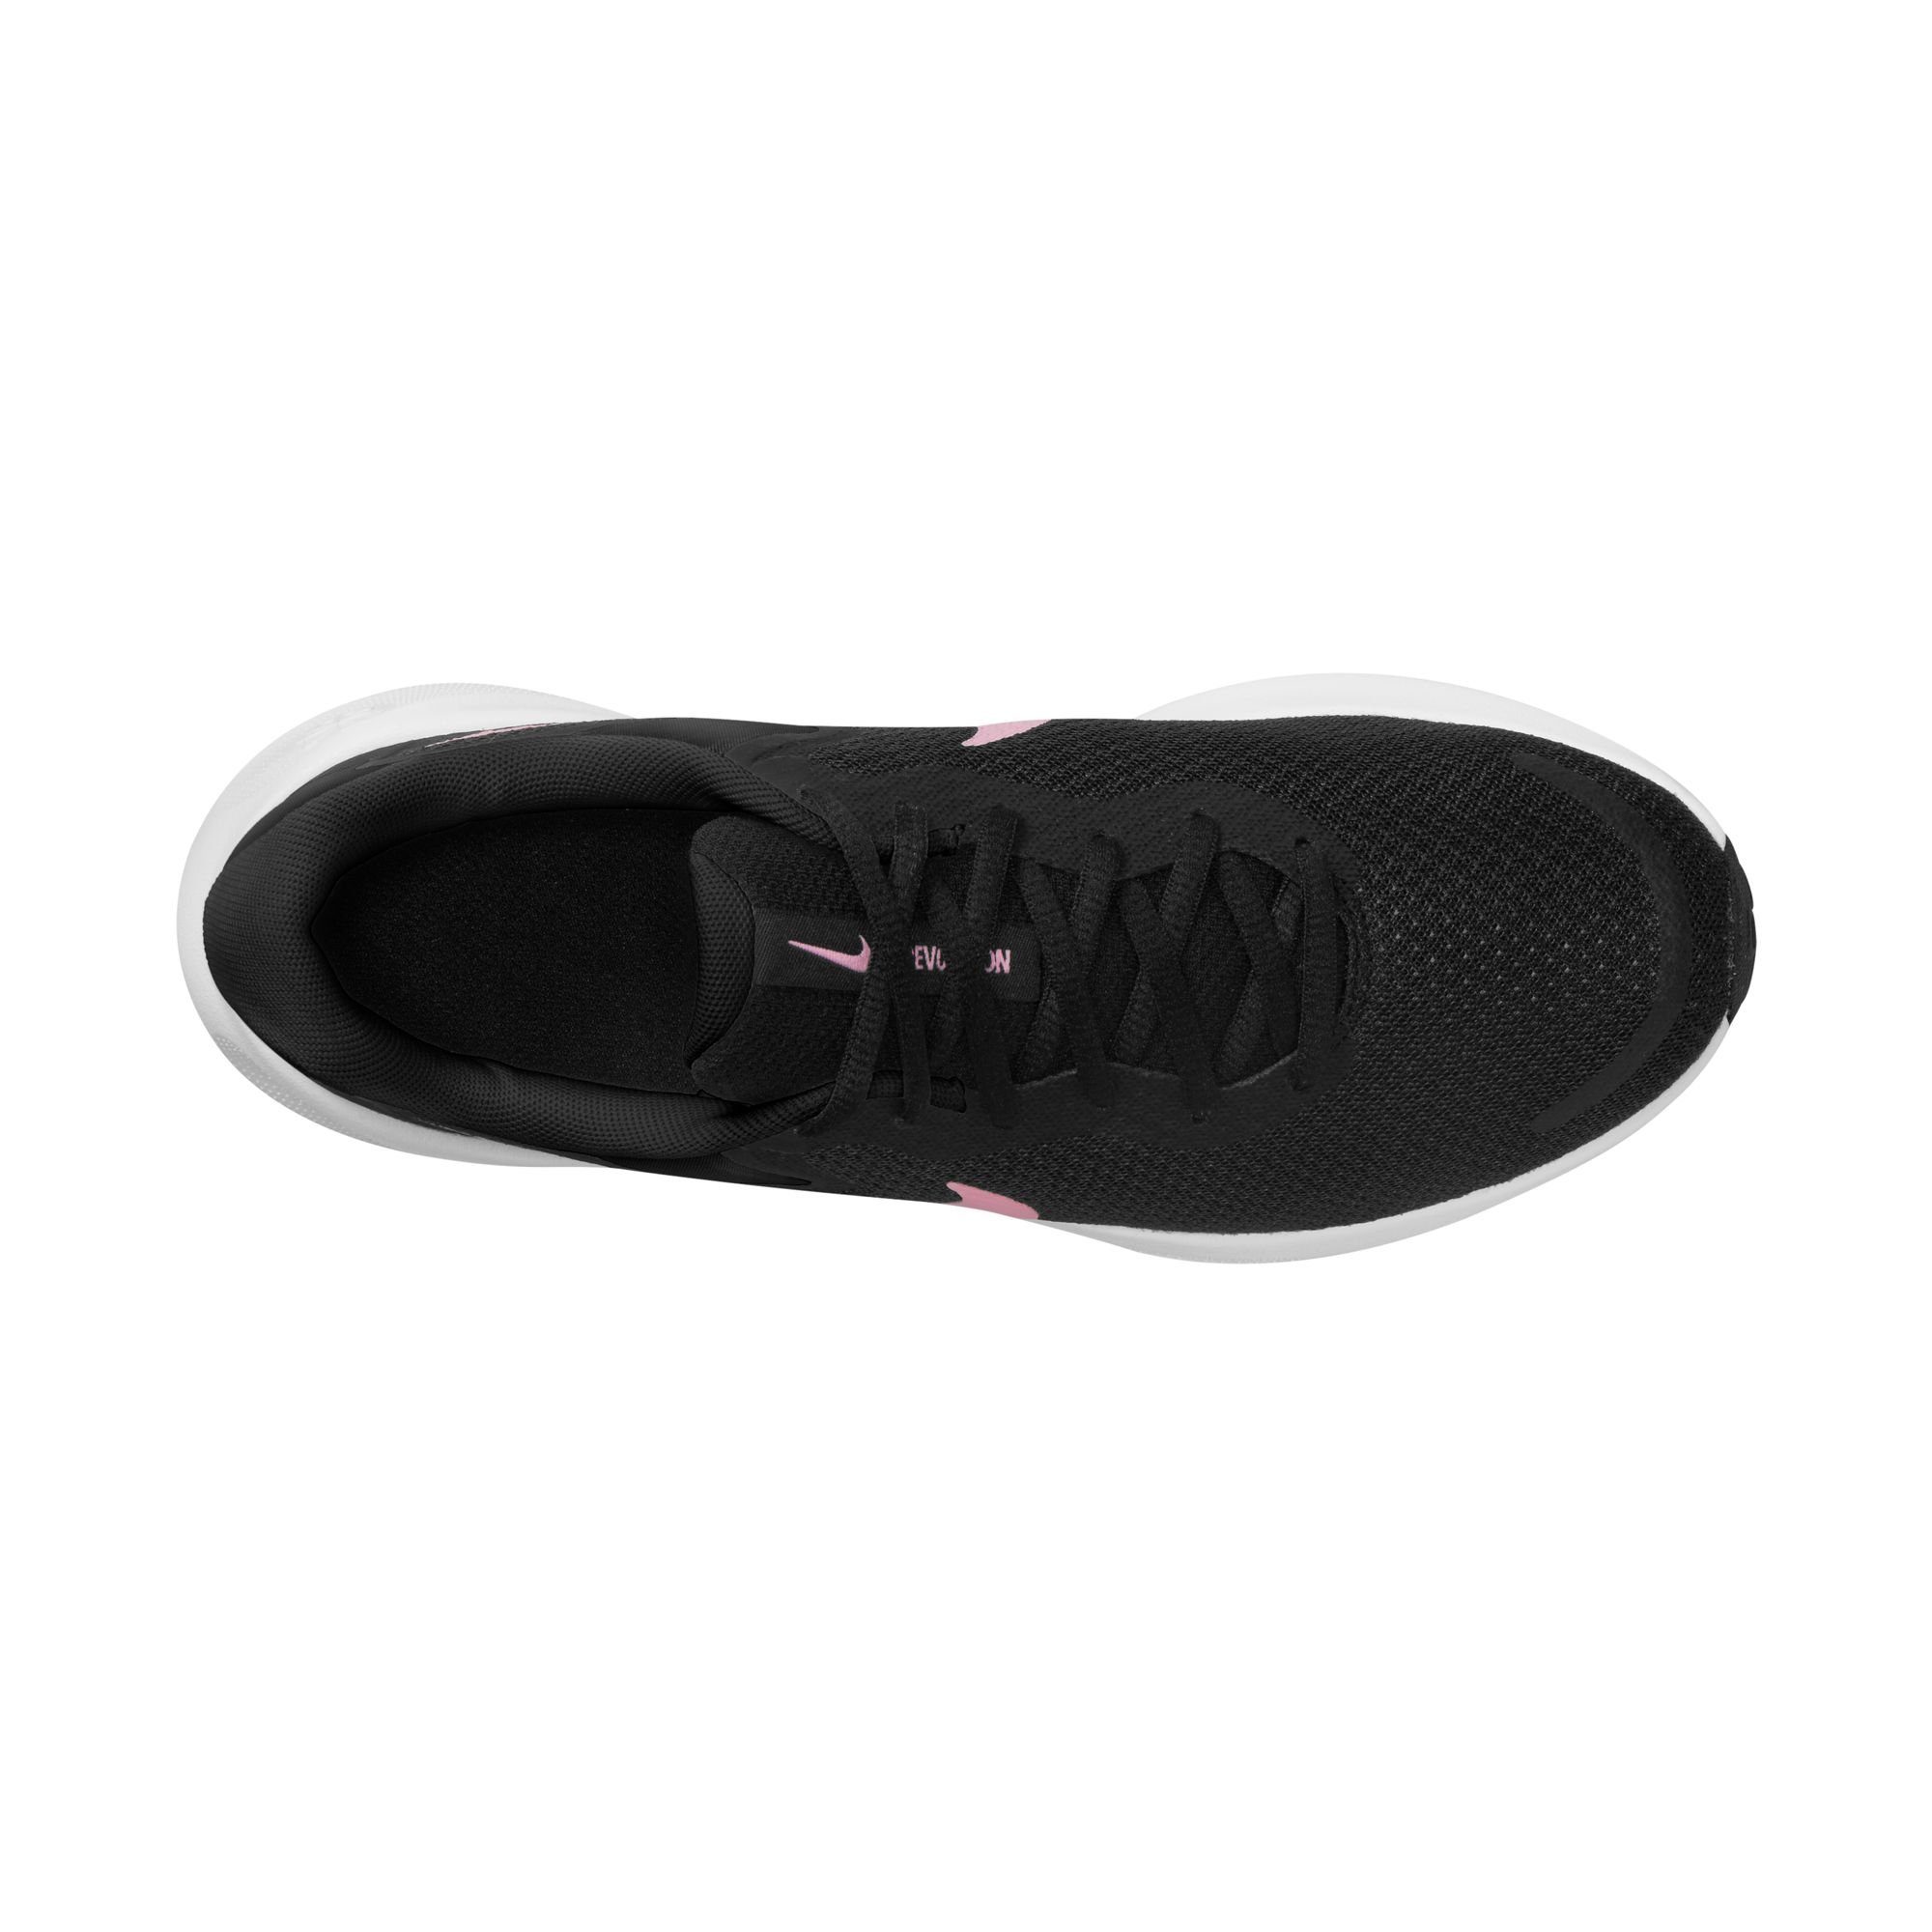 7 Laufschuh schwarz-pink Revolution Nike